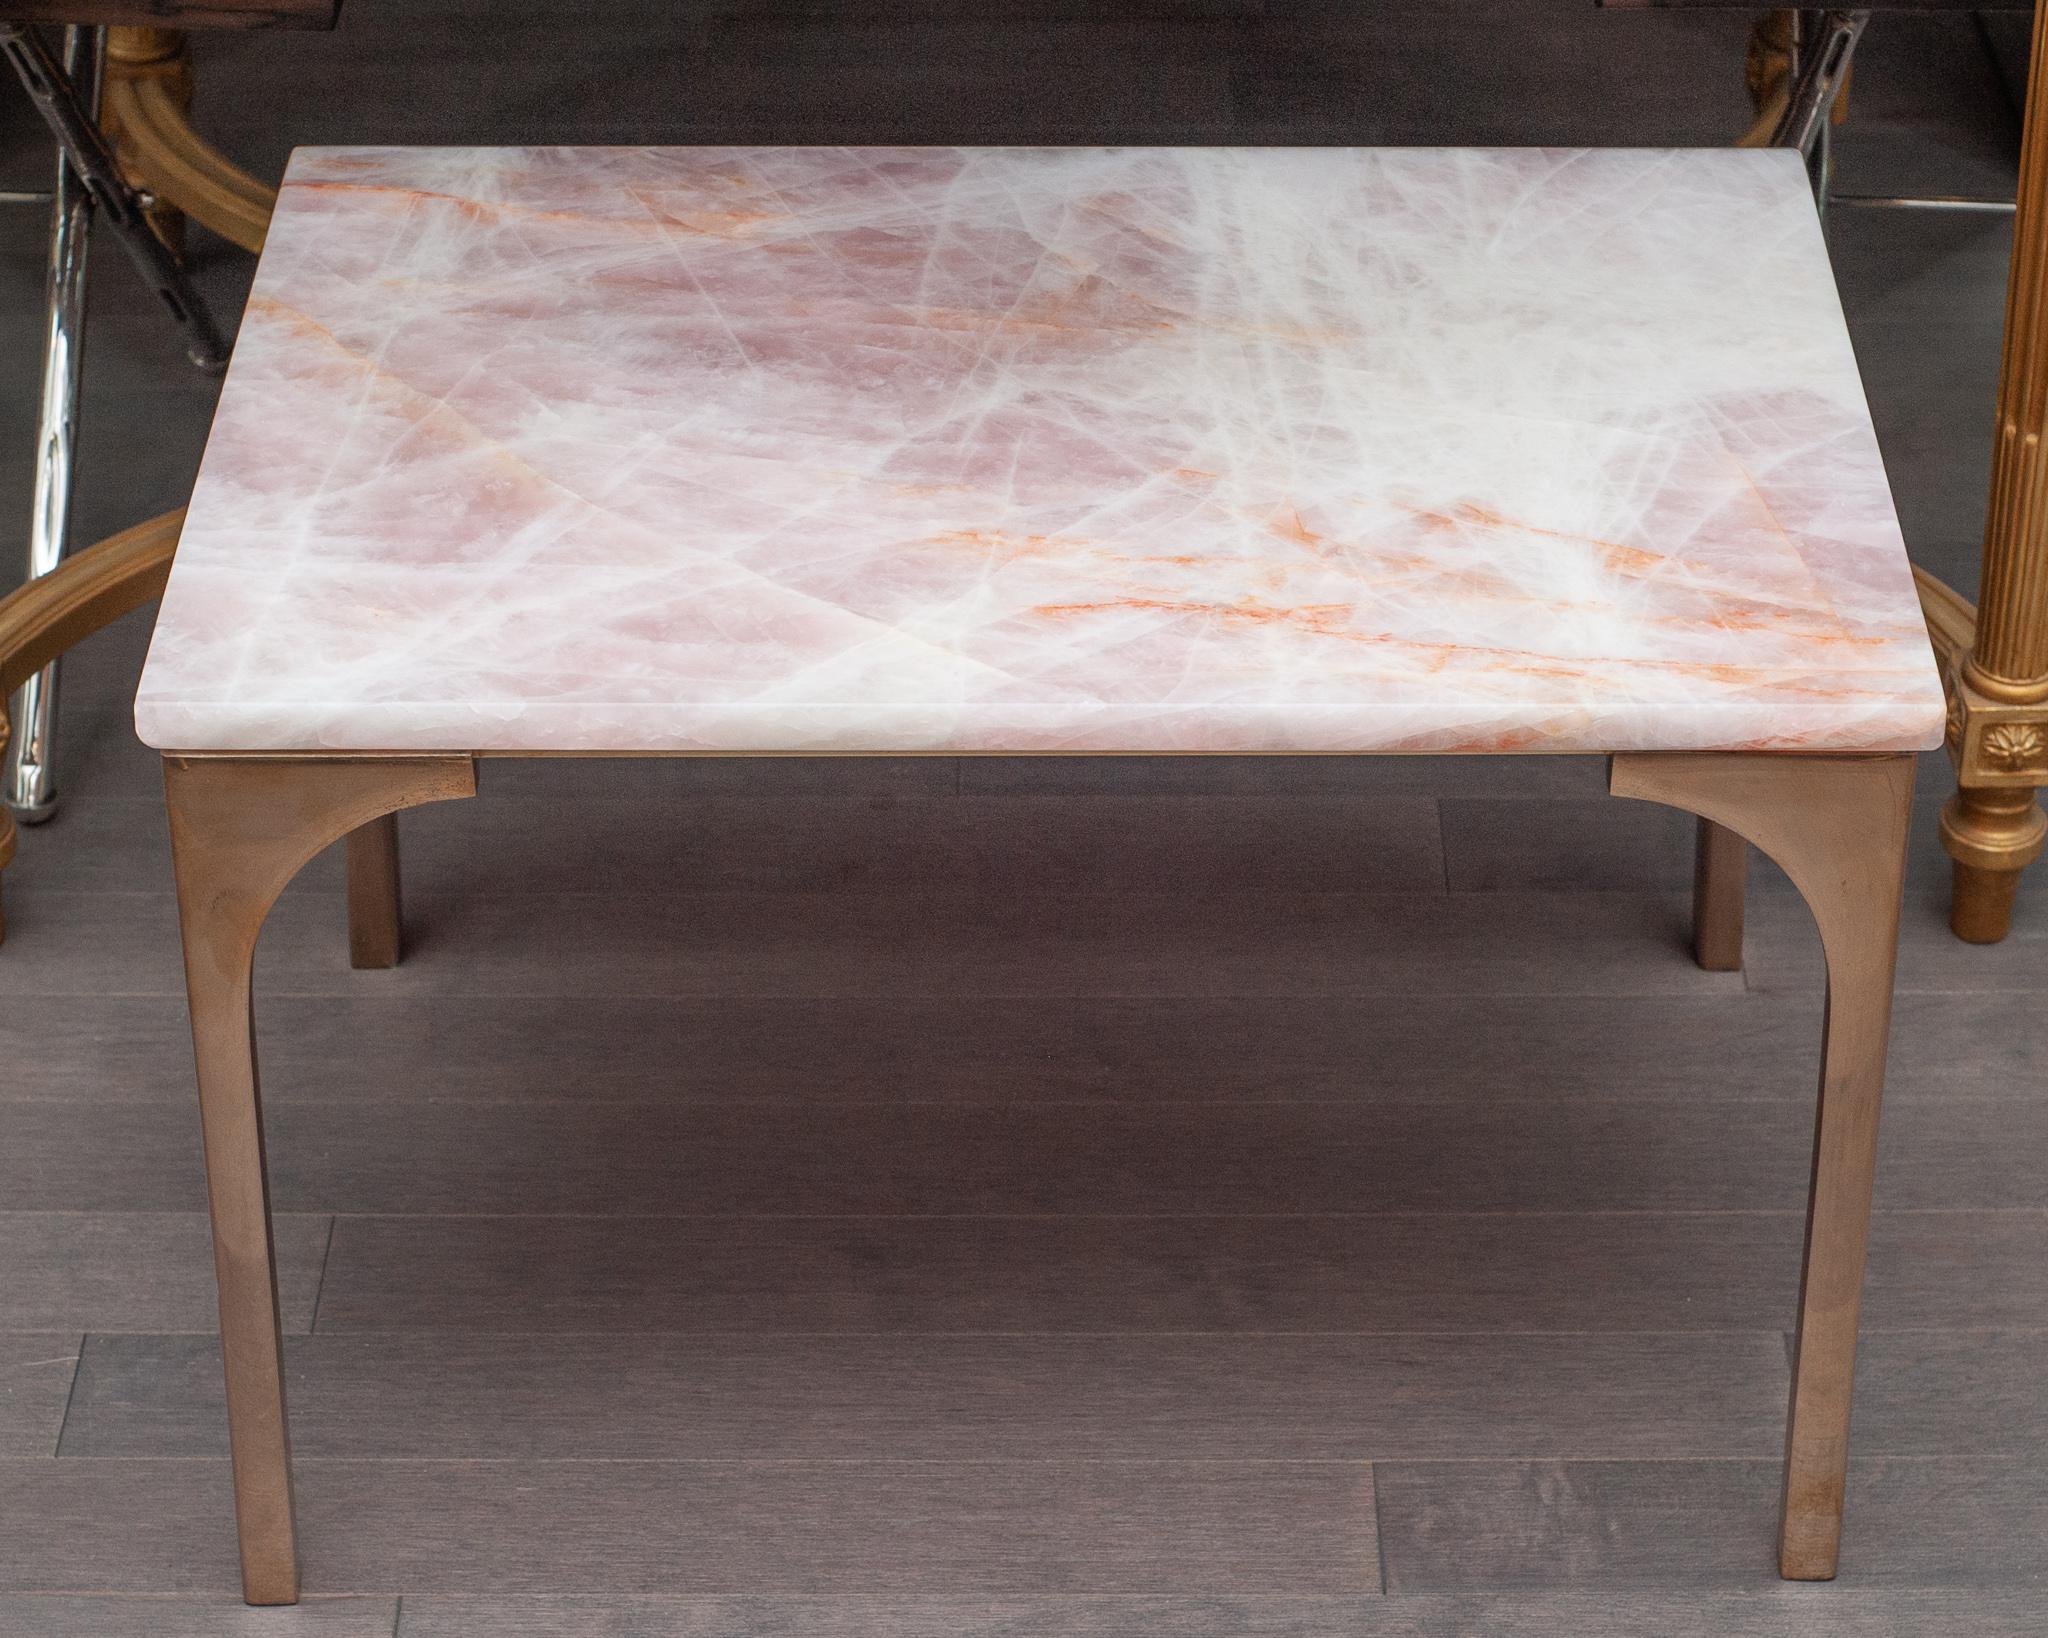 Ein wunderschöner Tisch von Studio Maison Nurita aus Rosenquarz und Bronze. Dieser Tisch ist aus einer massiven Platte aus hochwertigem Rosenquarz aus Brasilien gefertigt und verfügt über polierte, roségoldfarbene, massiv gegossene Bronzebeine. Der